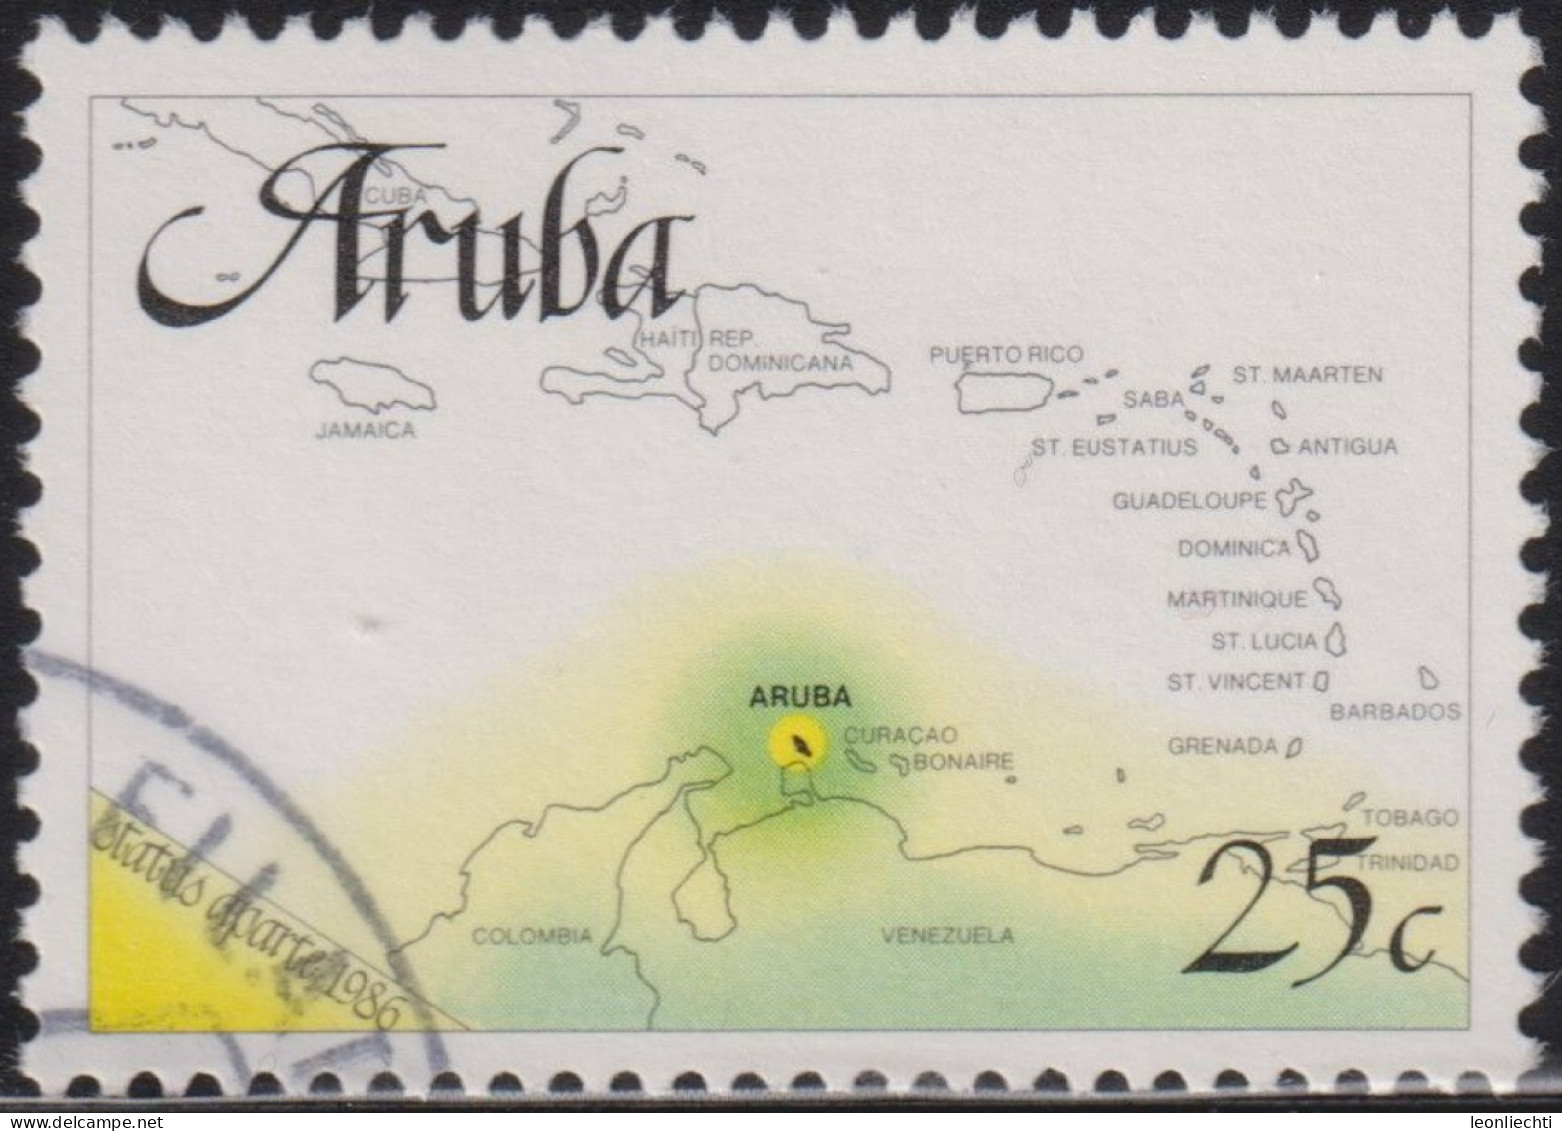 1986 Aruba ° Mi:AW 1, Sn:AW 18, Yt:AW 1, Sg:AW 1, NVP:AW 1, Card From Aruba, Separat-status 1986-01-01 - Curazao, Antillas Holandesas, Aruba